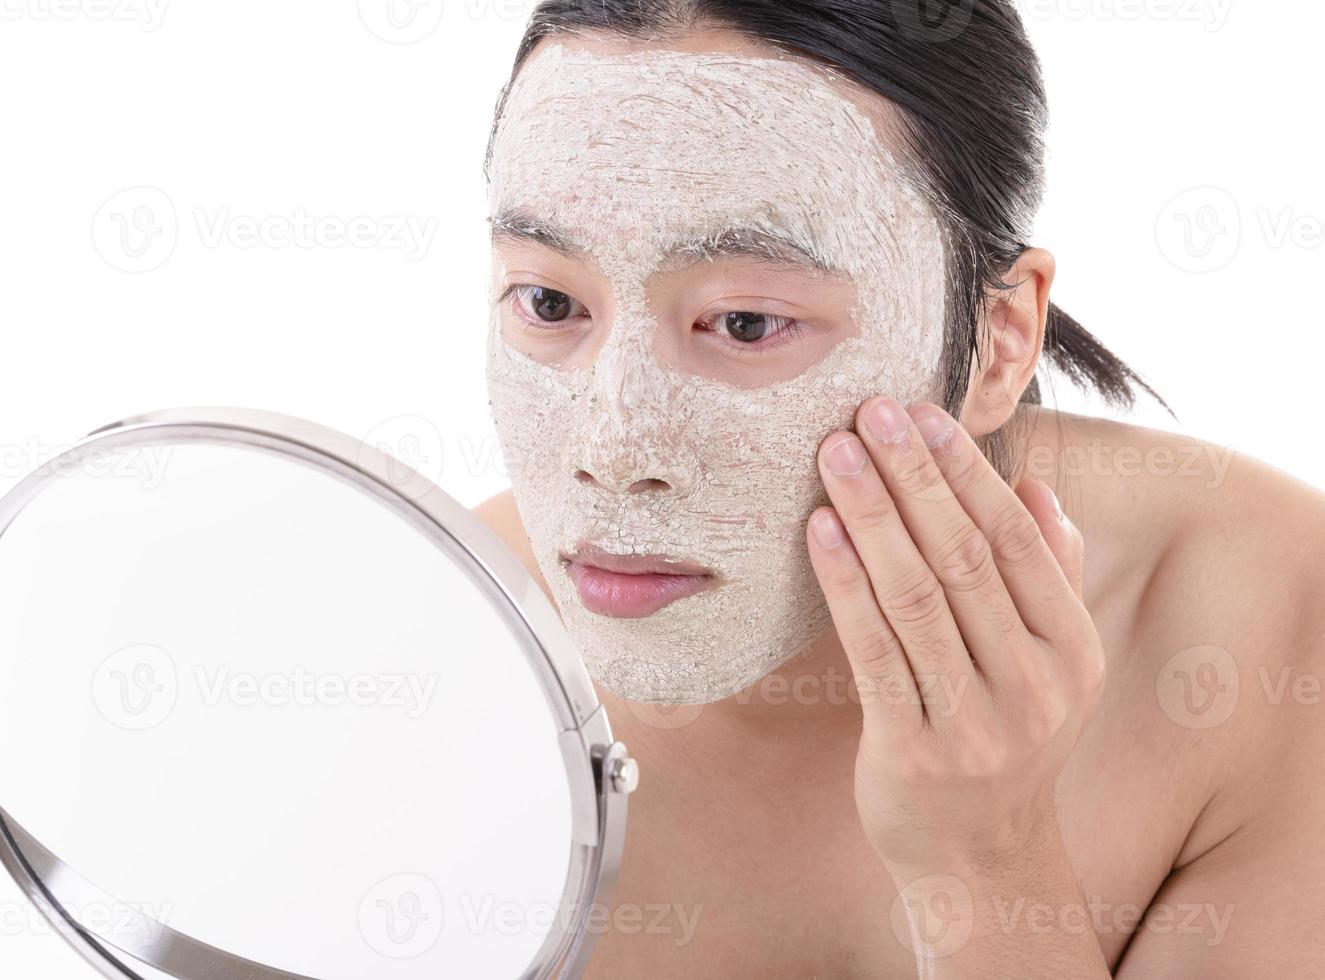 Schönheitsverfahren und Hautpflege. Nahaufnahme Porträt eines glücklich lachenden, oben ohne asiatischen Mannes mit Gesichtsmaske, die sein Gesicht berührt. isoliert auf weißem Hintergrund. foto